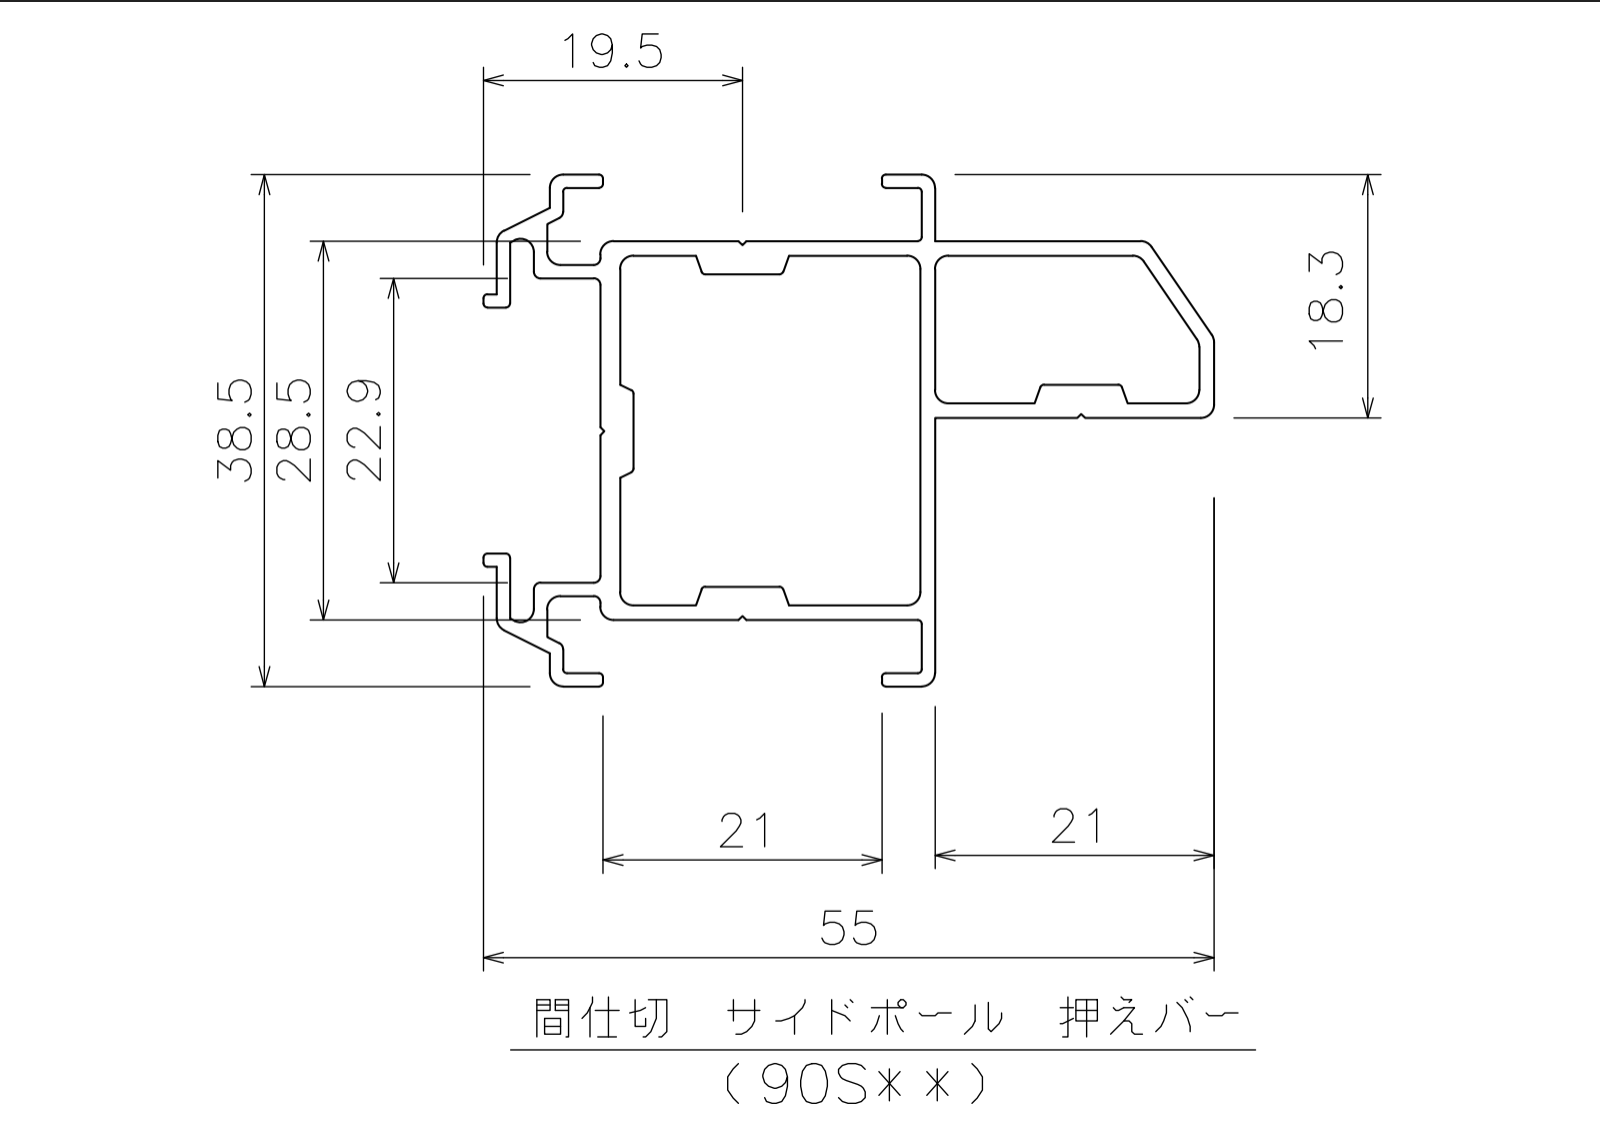 間仕切サイドポール【押えバータイプ】3.5m図-1